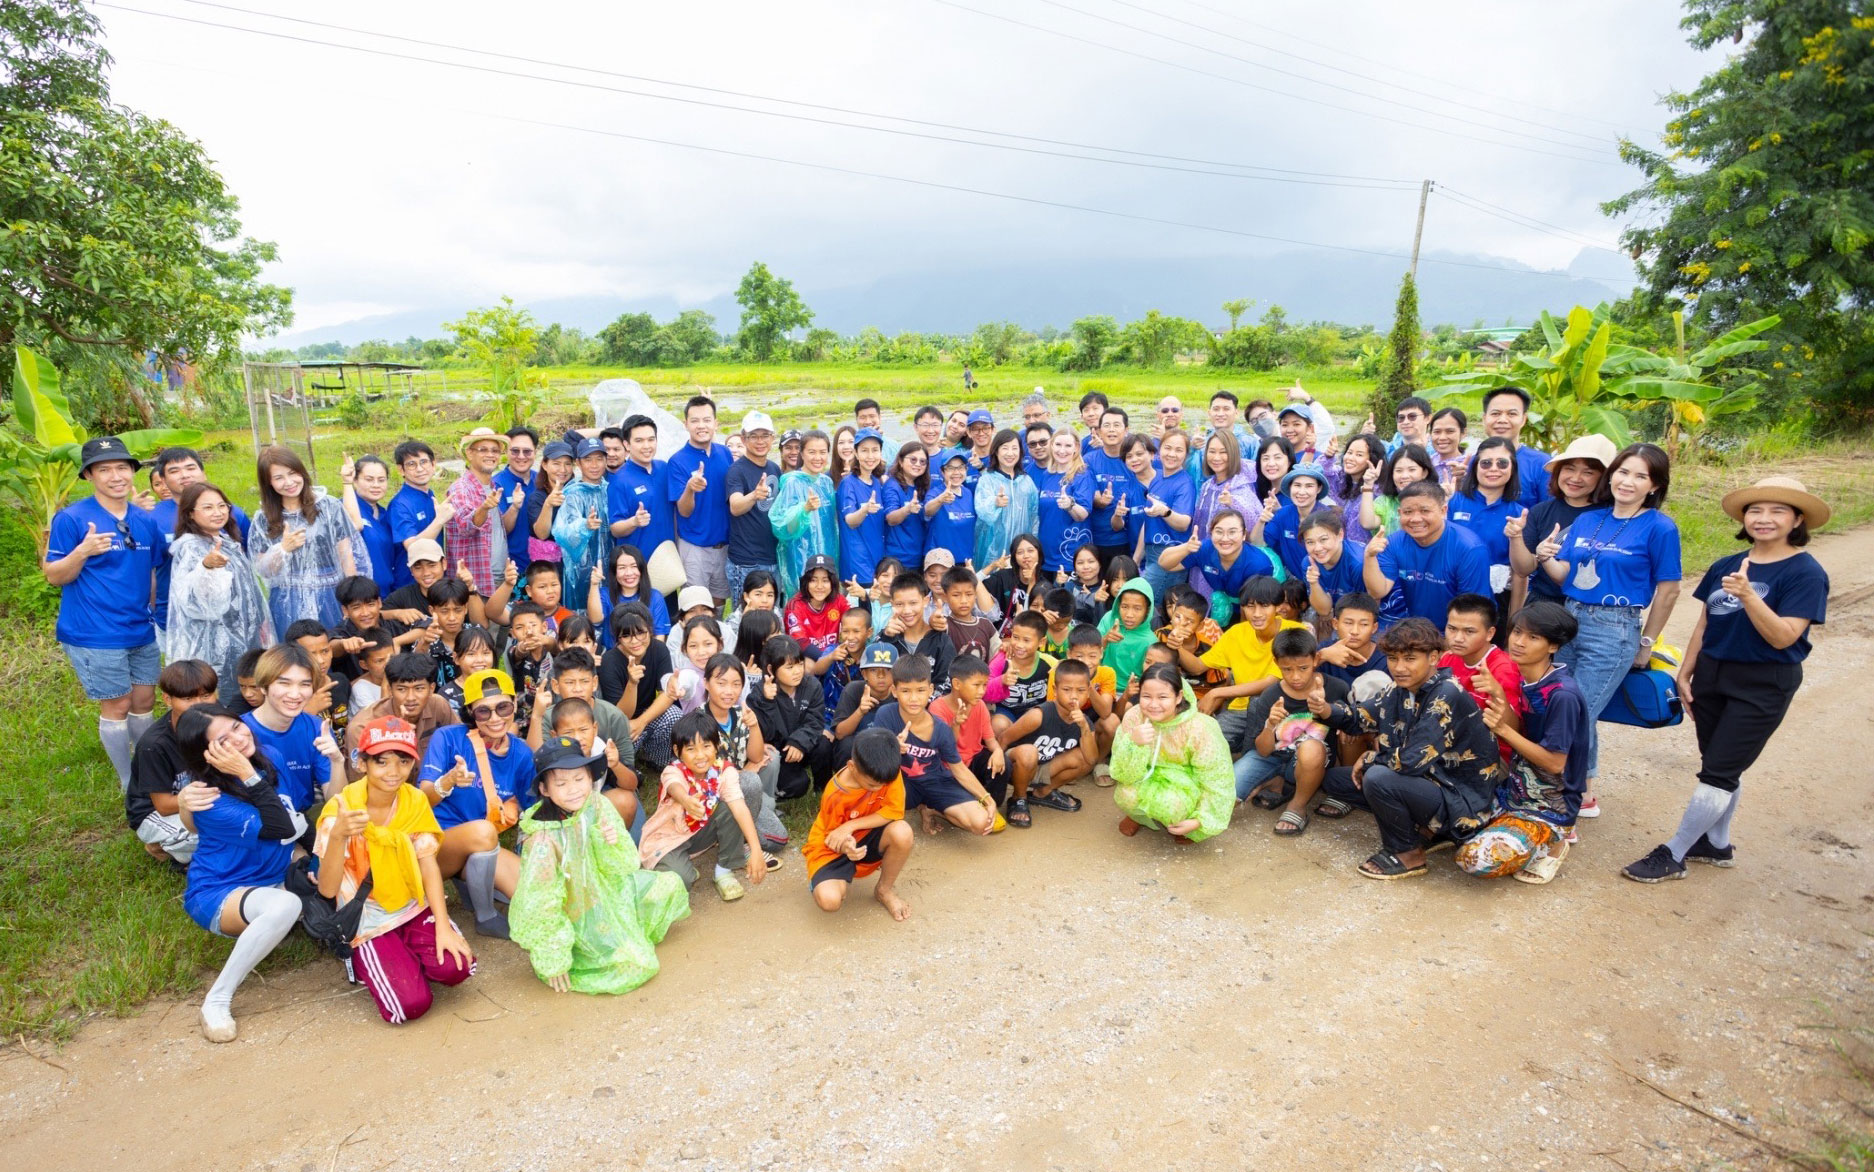 กรุงไทย–แอกซ่า ประกันชีวิต เดินหน้าสร้างความยั่งยืนให้กับสังคม ก้าวสู่ปีที่ 16 กับโครงการ “แผ่นดินทองเพื่อน้องๆ บ้านนานา”